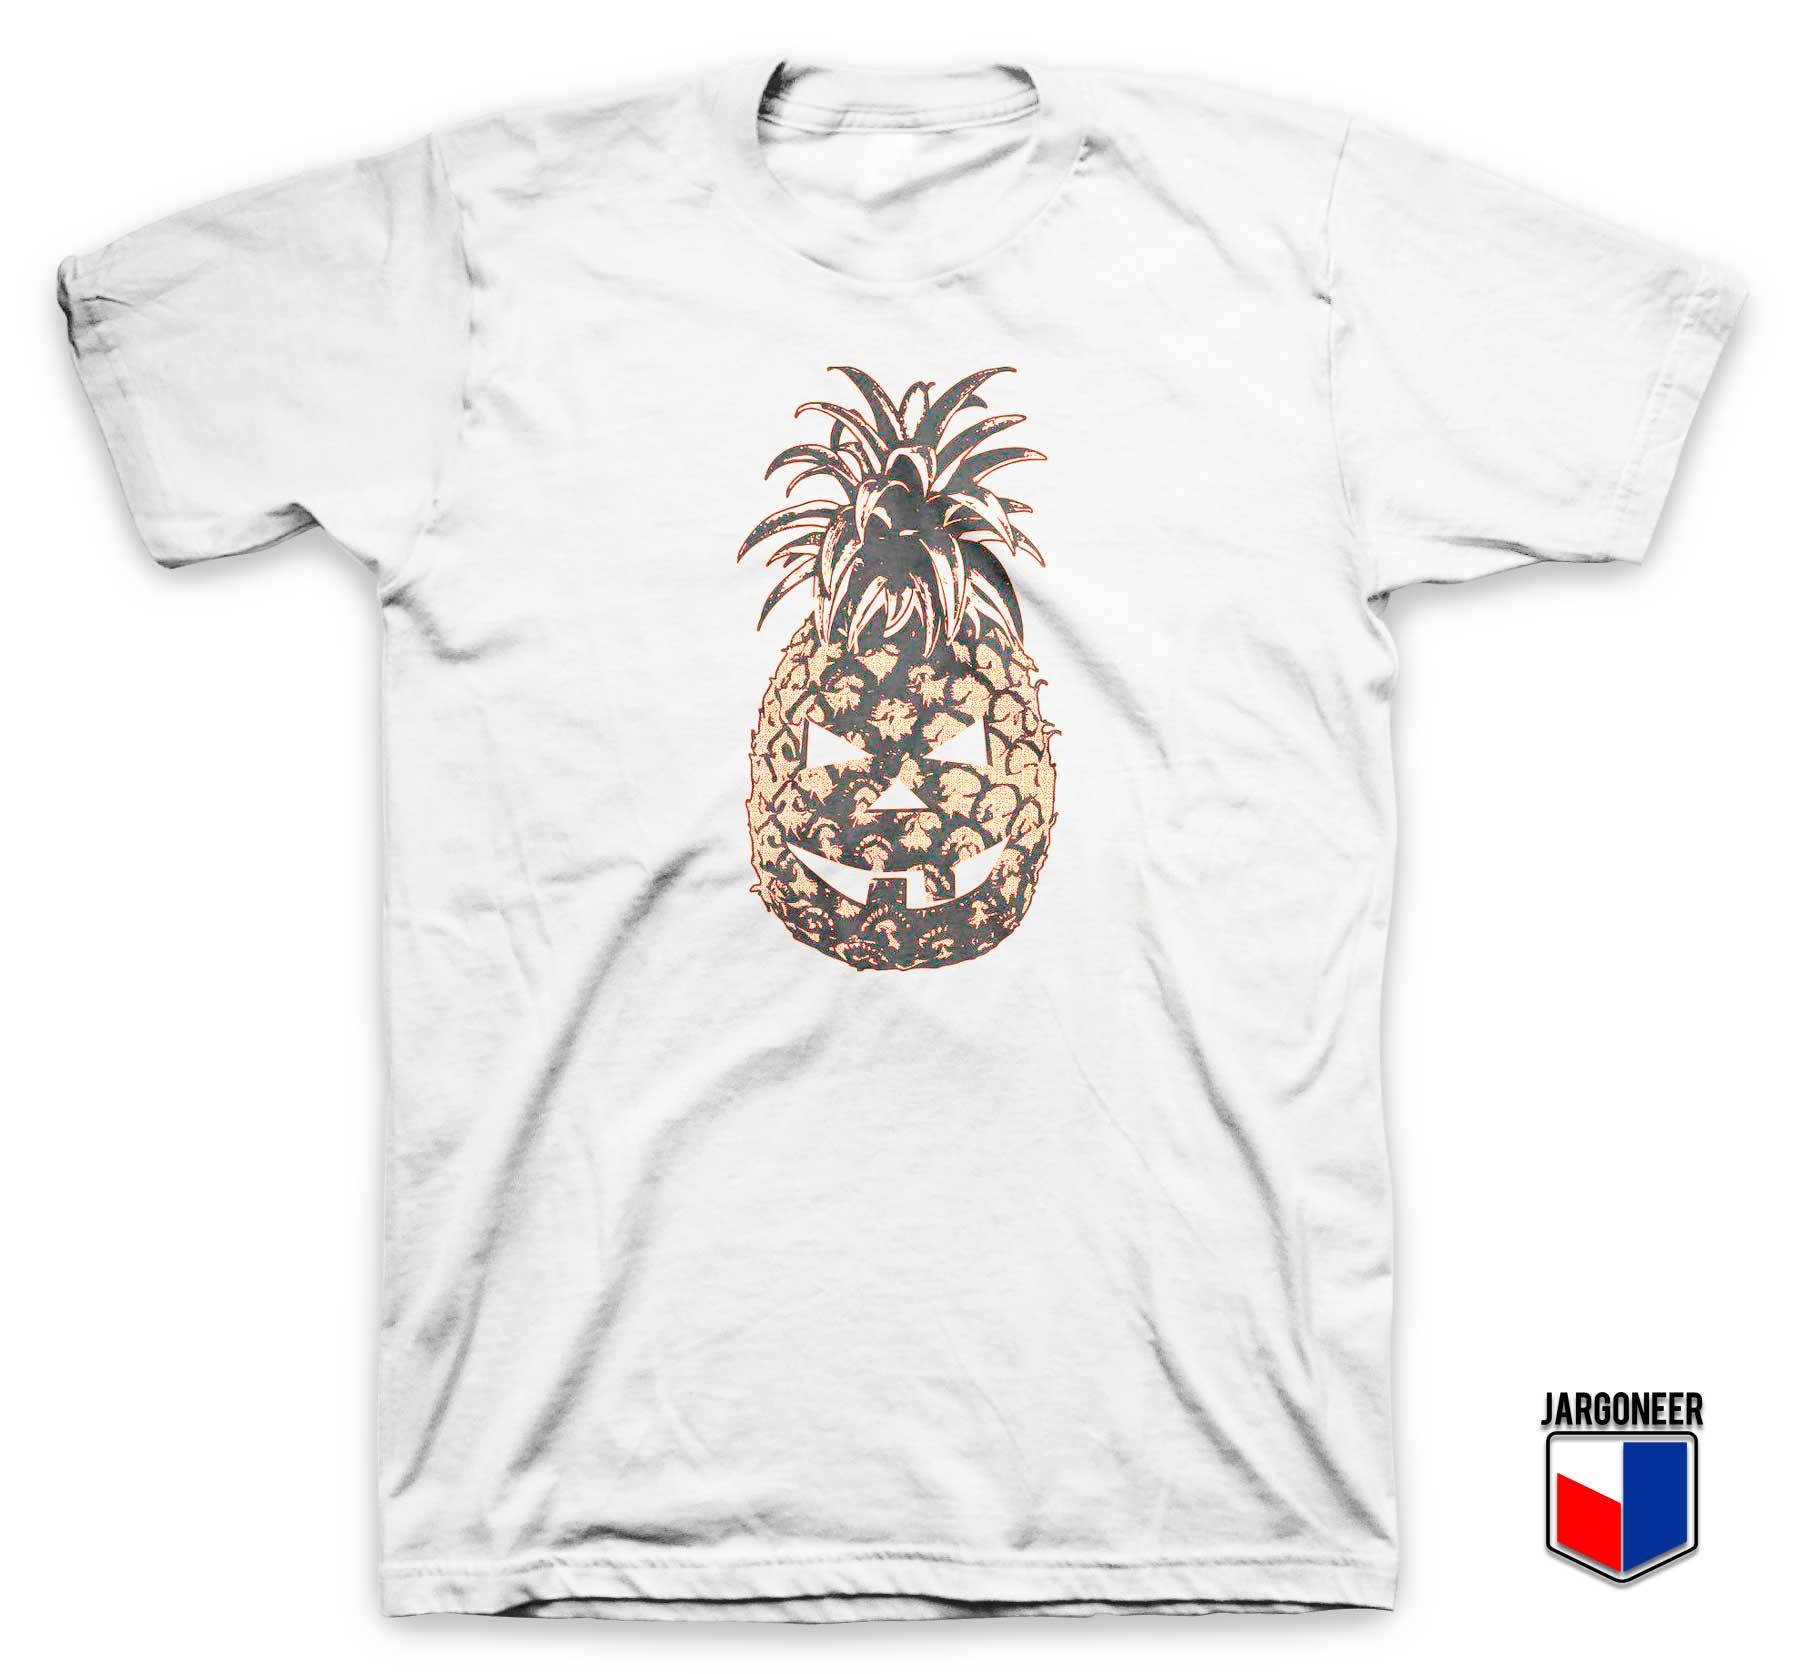 Pineapple Jack Pumpkins T Shirt - Shop Unique Graphic Cool Shirt Designs